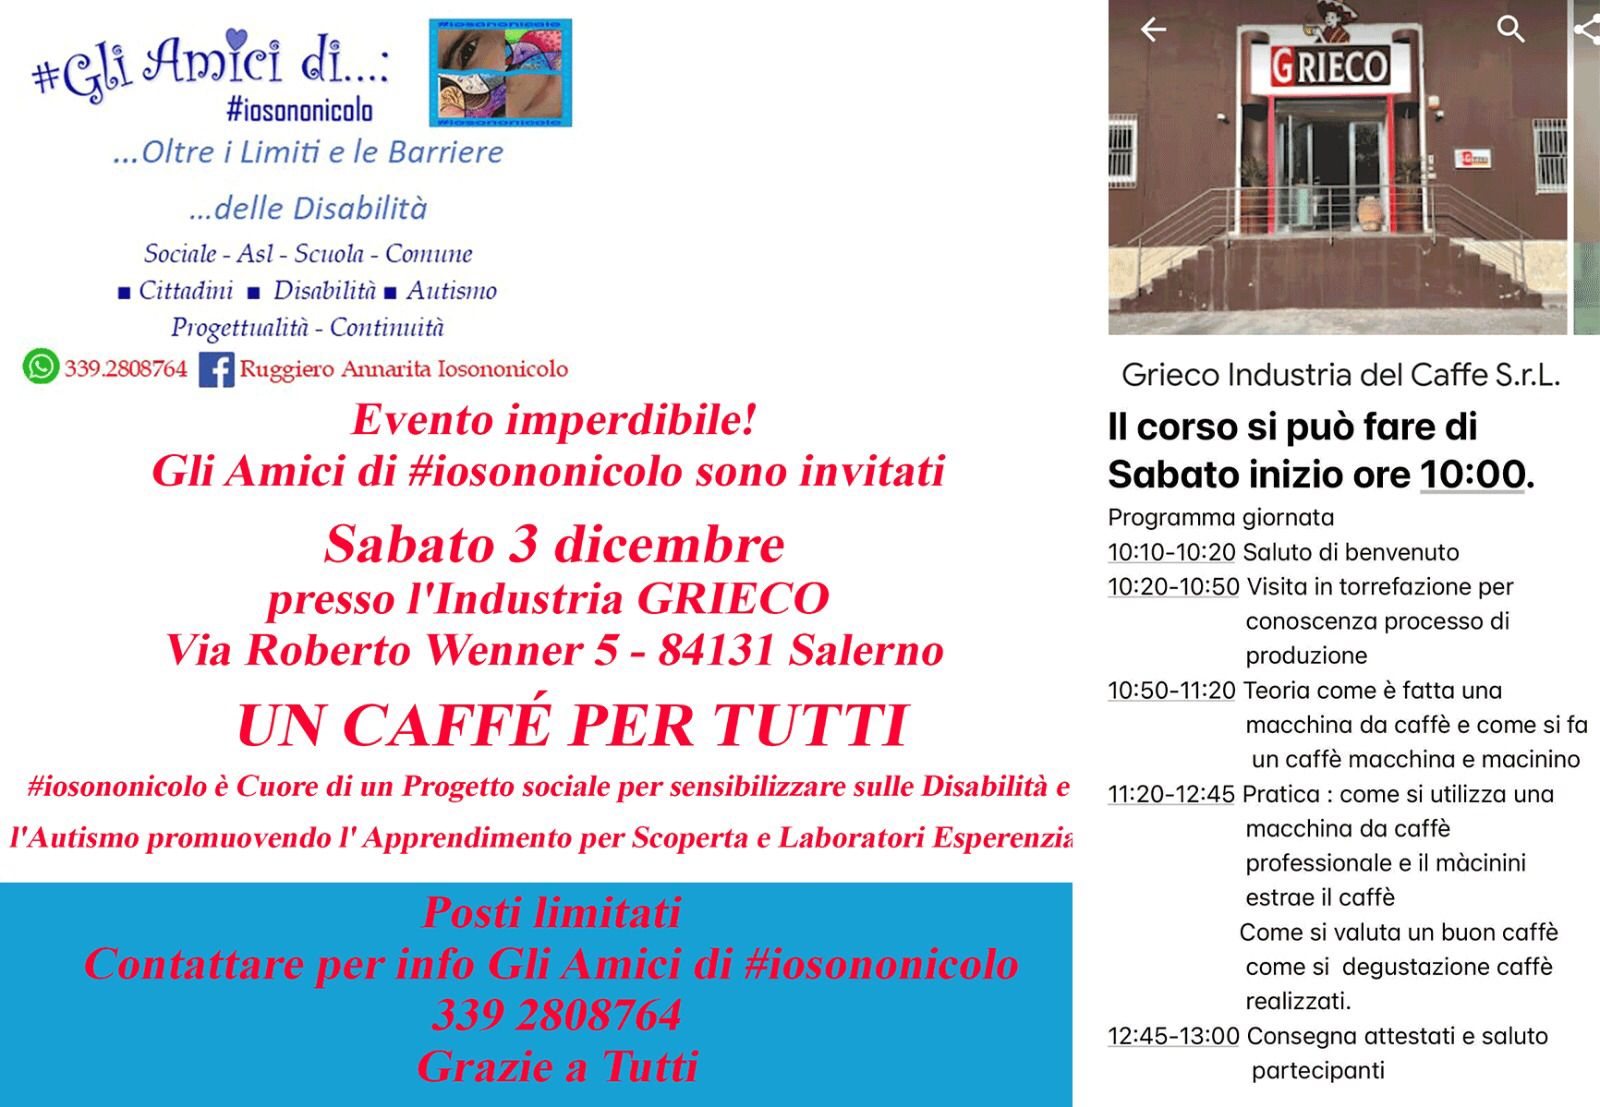 Salerno: I Corso di Formazione “Manager Quality Coffee Junior”, per Ragazzi Diversamente Abili 